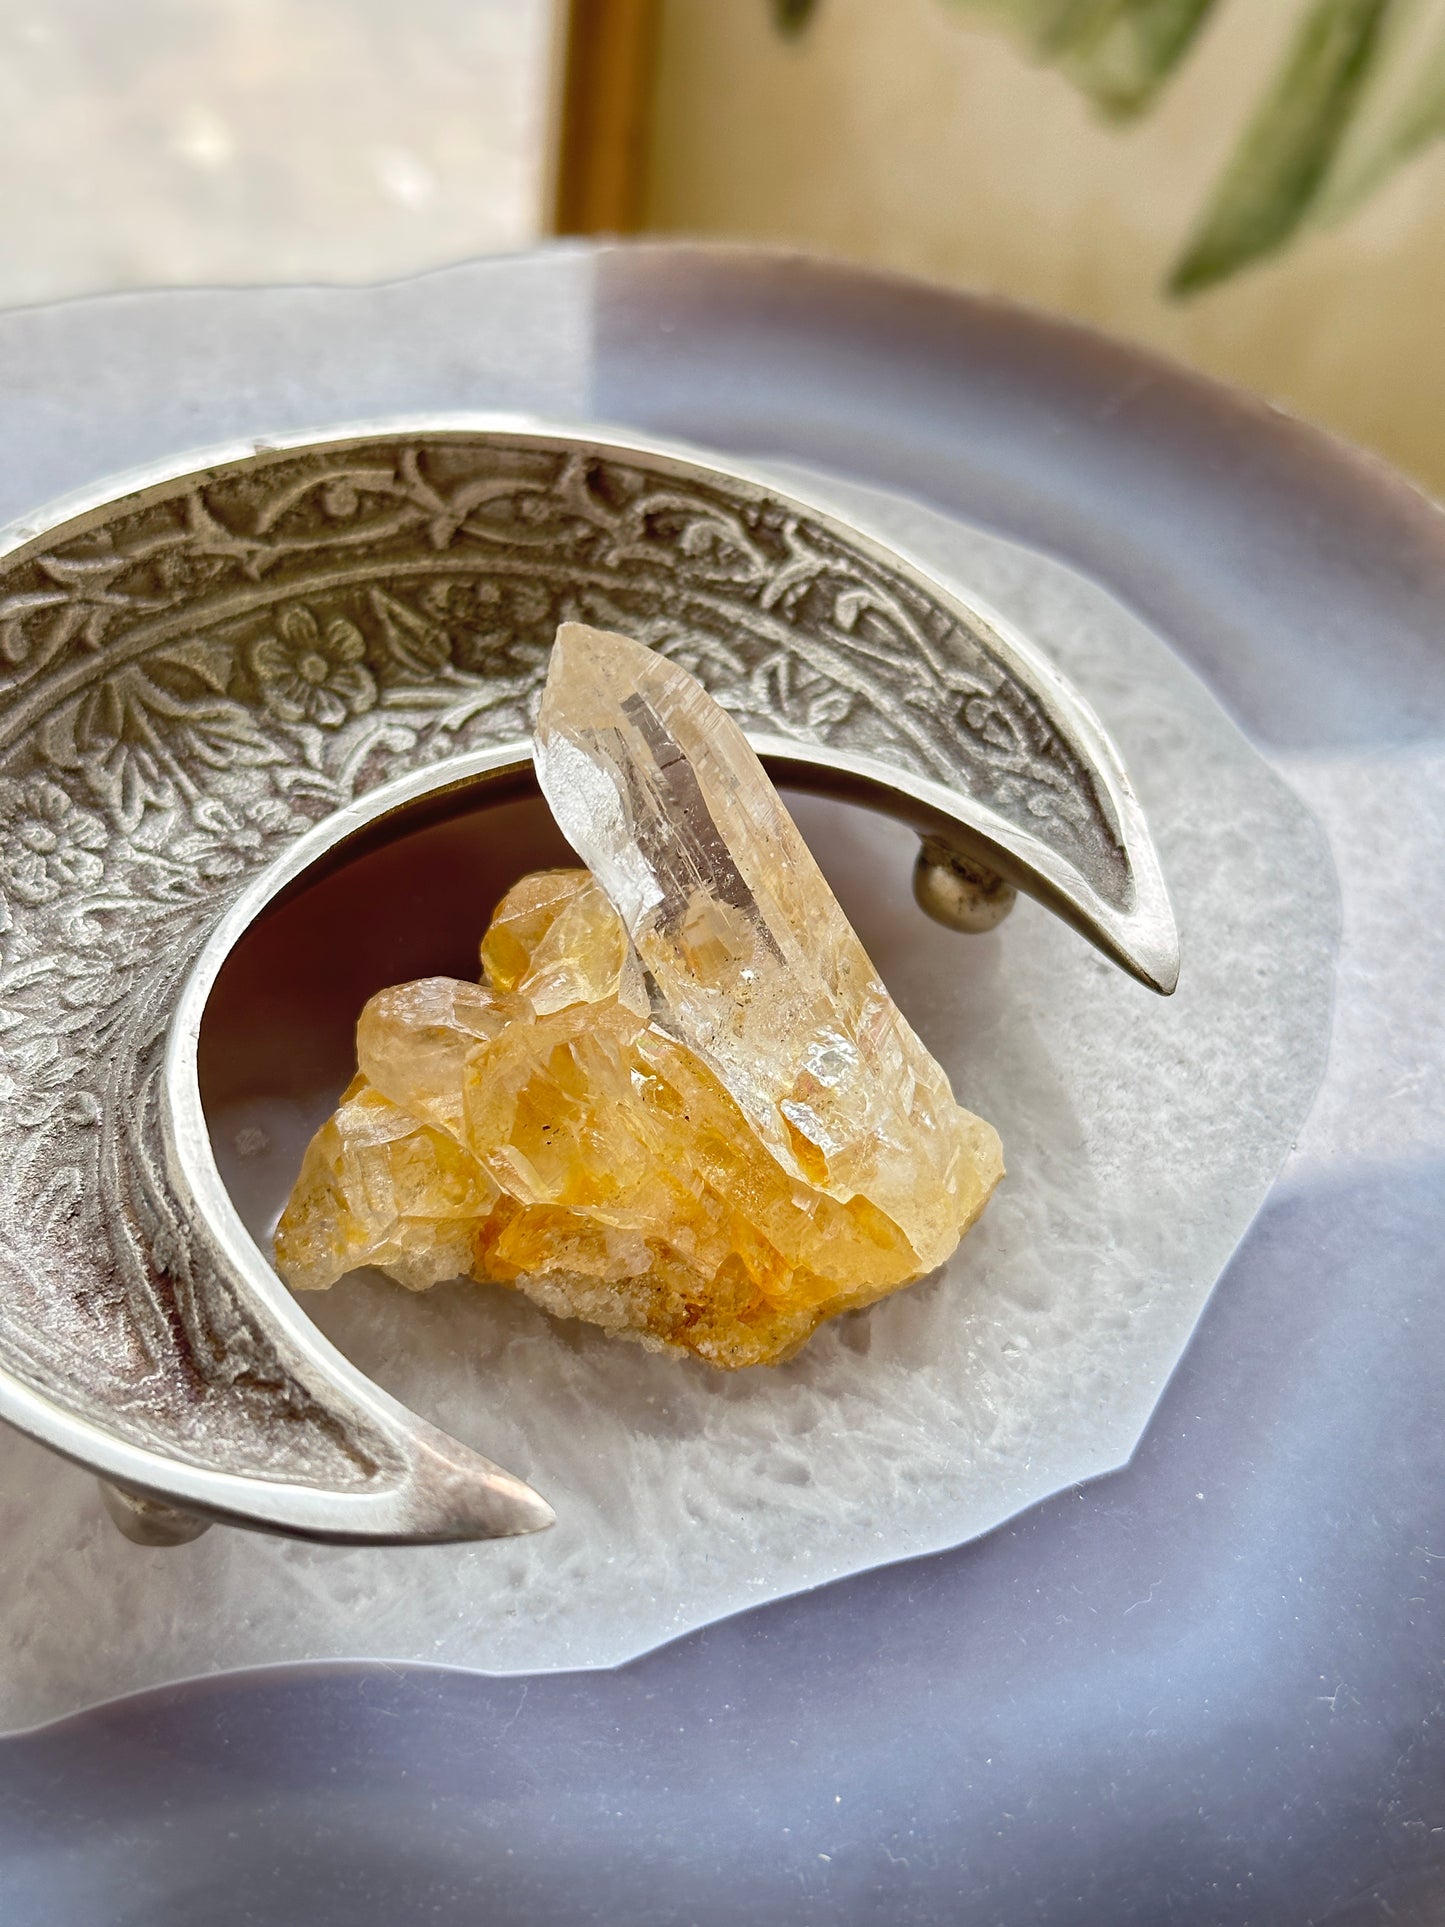 尼泊爾黃金喜馬拉雅水晶 Nepal Himalayan golden quartz